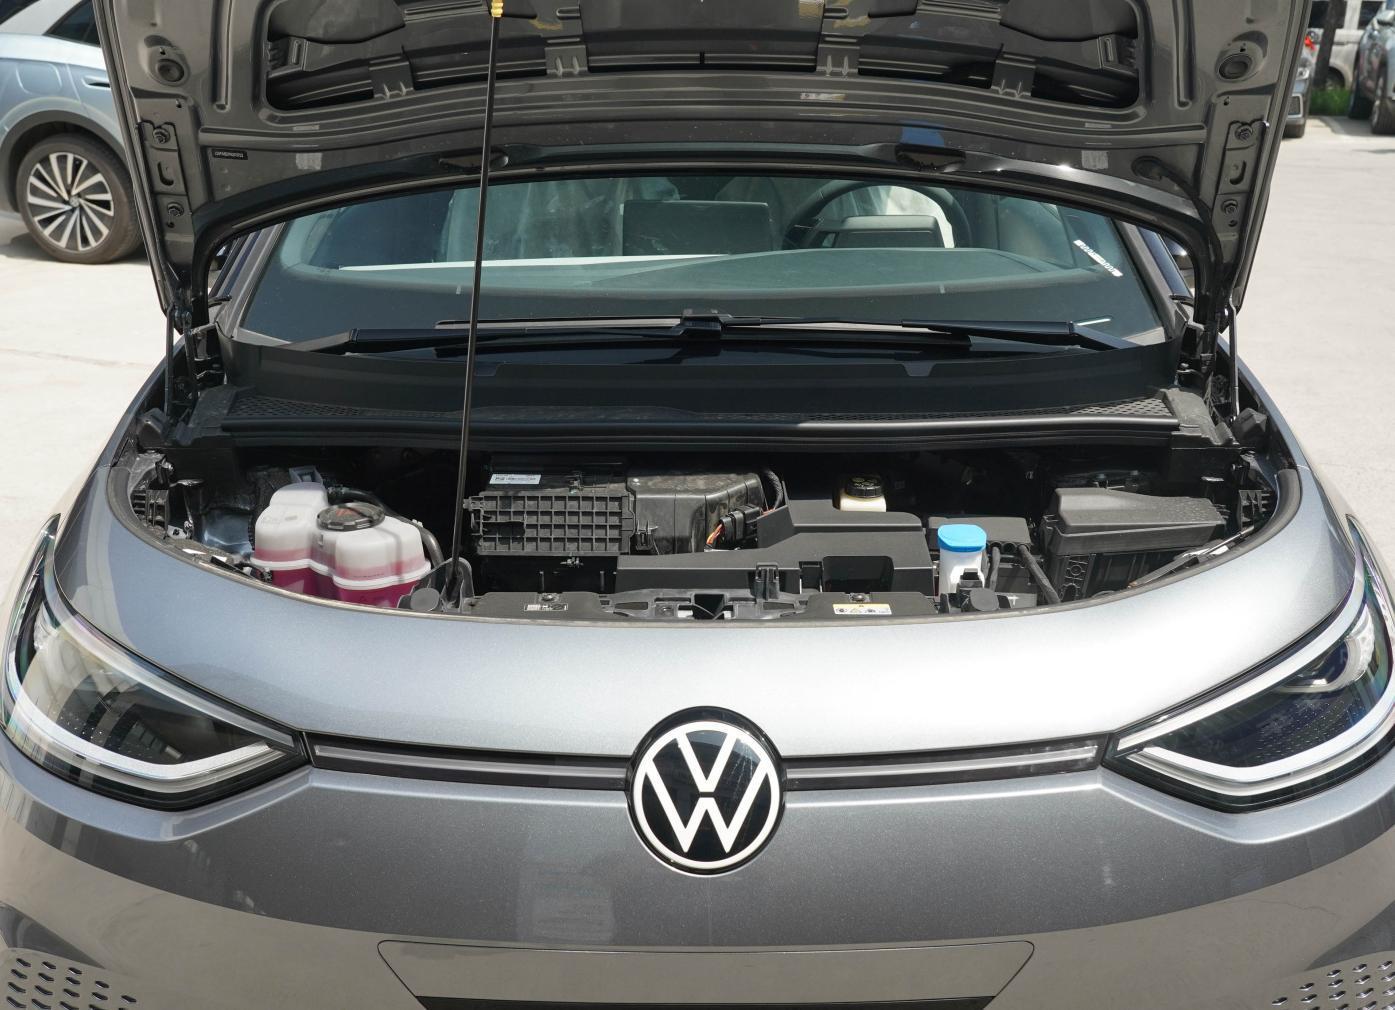  Volkswagen ID 3 New energy vehicle export